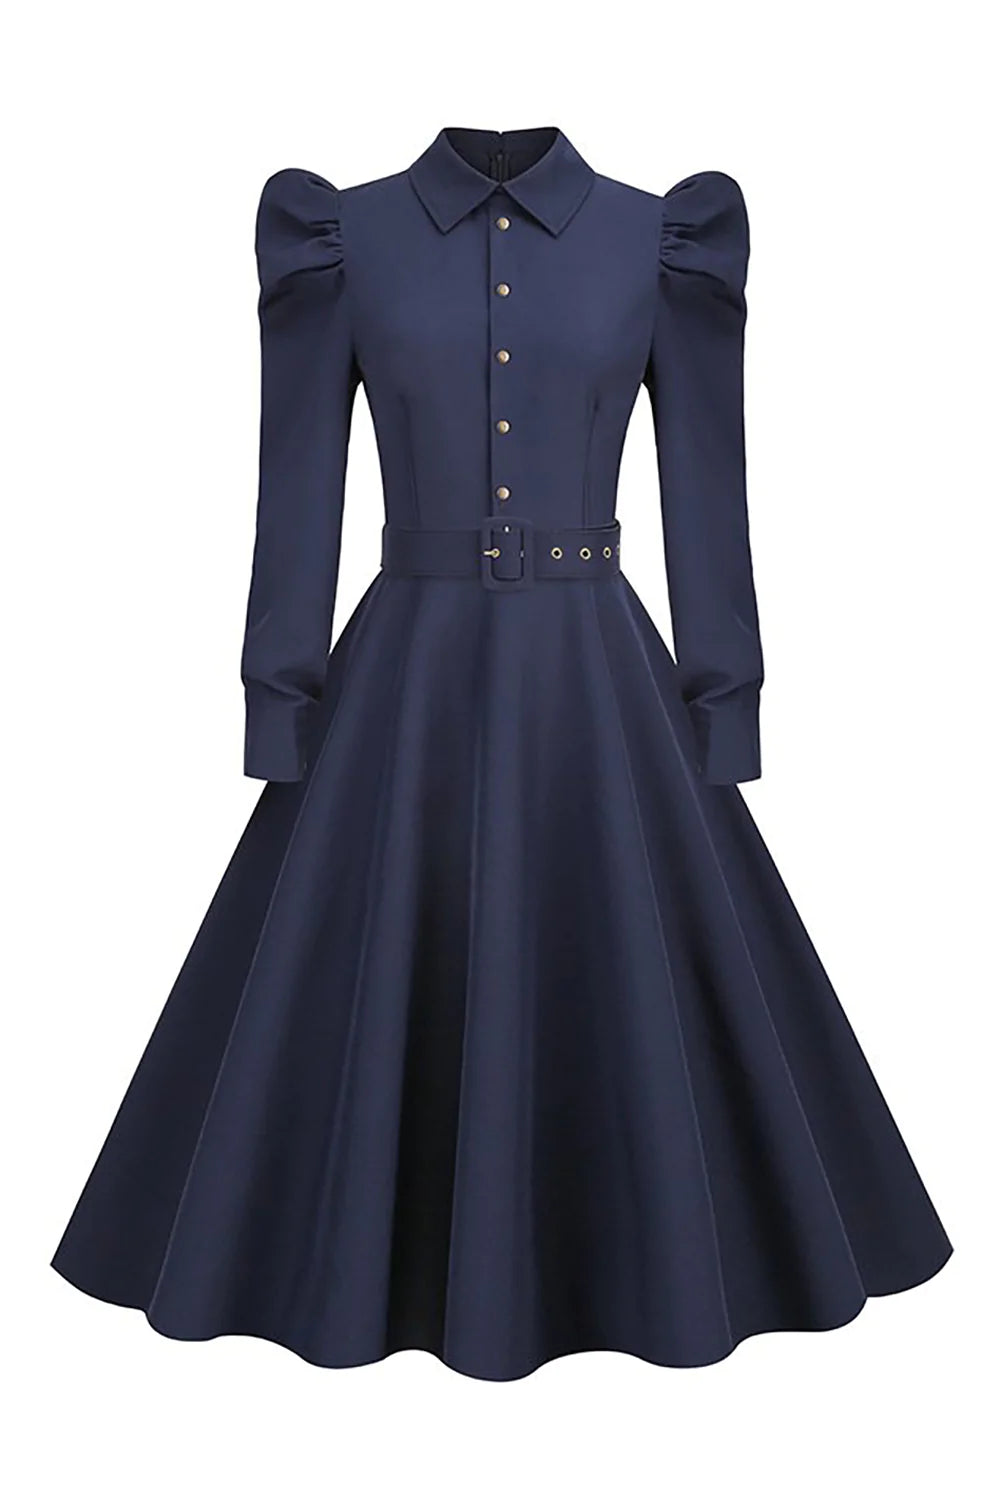 Long Sleeves Navy Vintage Dress